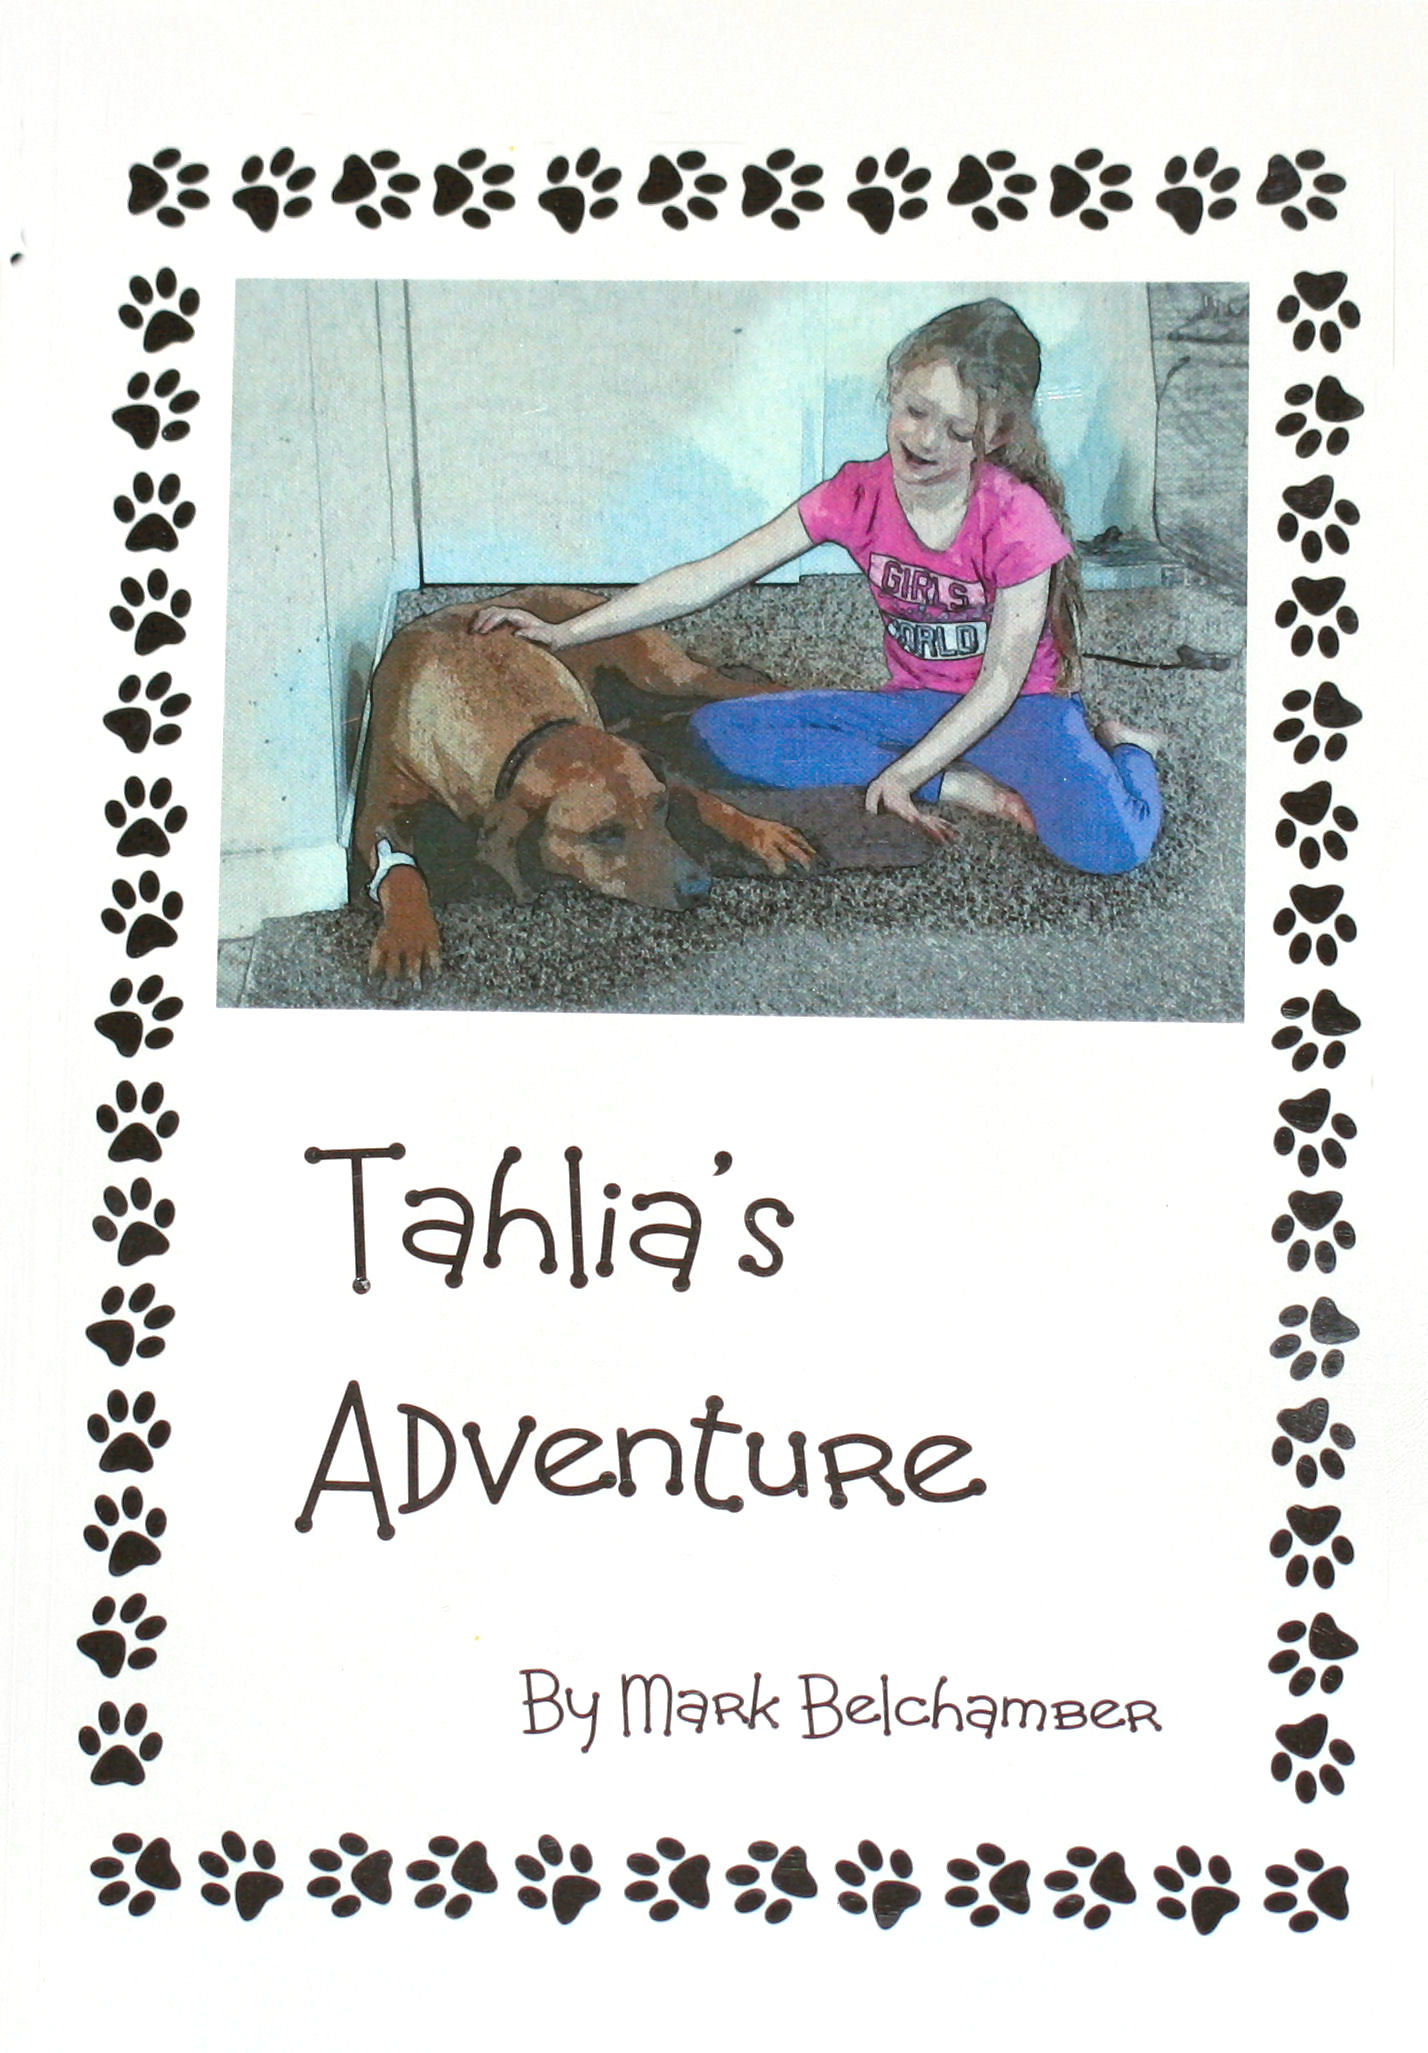 Tahlia's Adventure